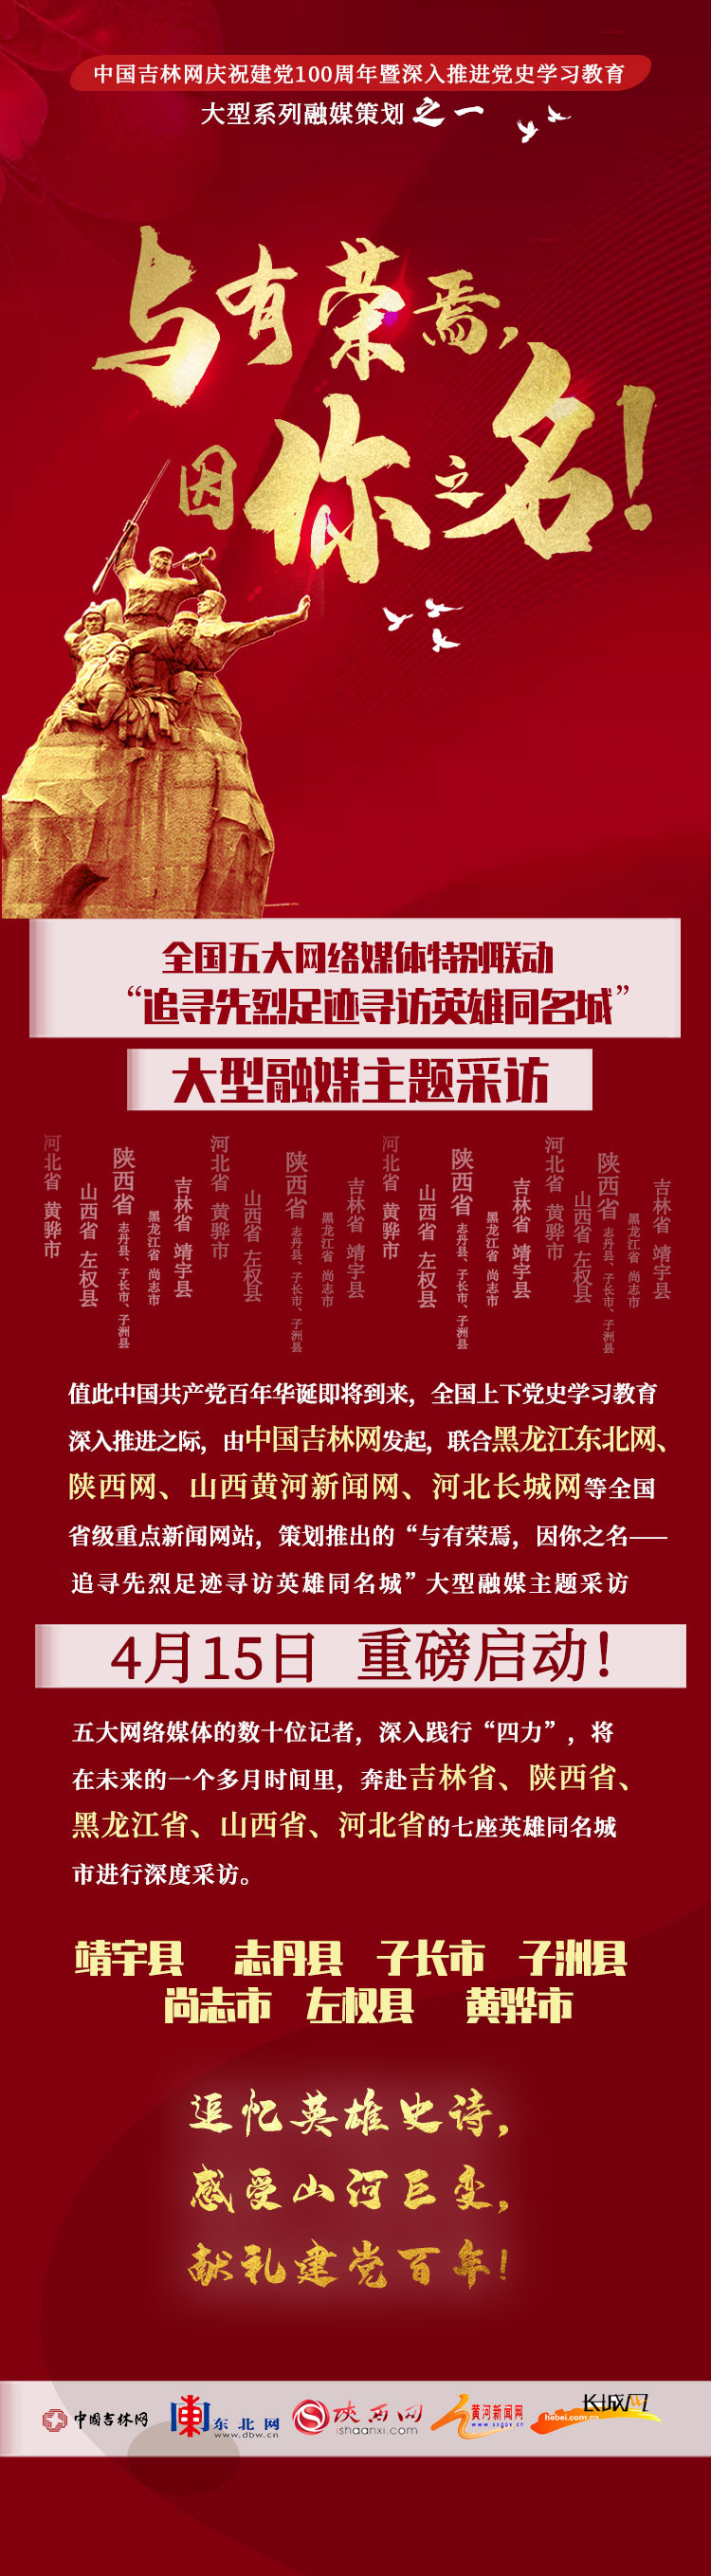 中国吉林网庆祝建党100周年大型系列融媒体策划之一